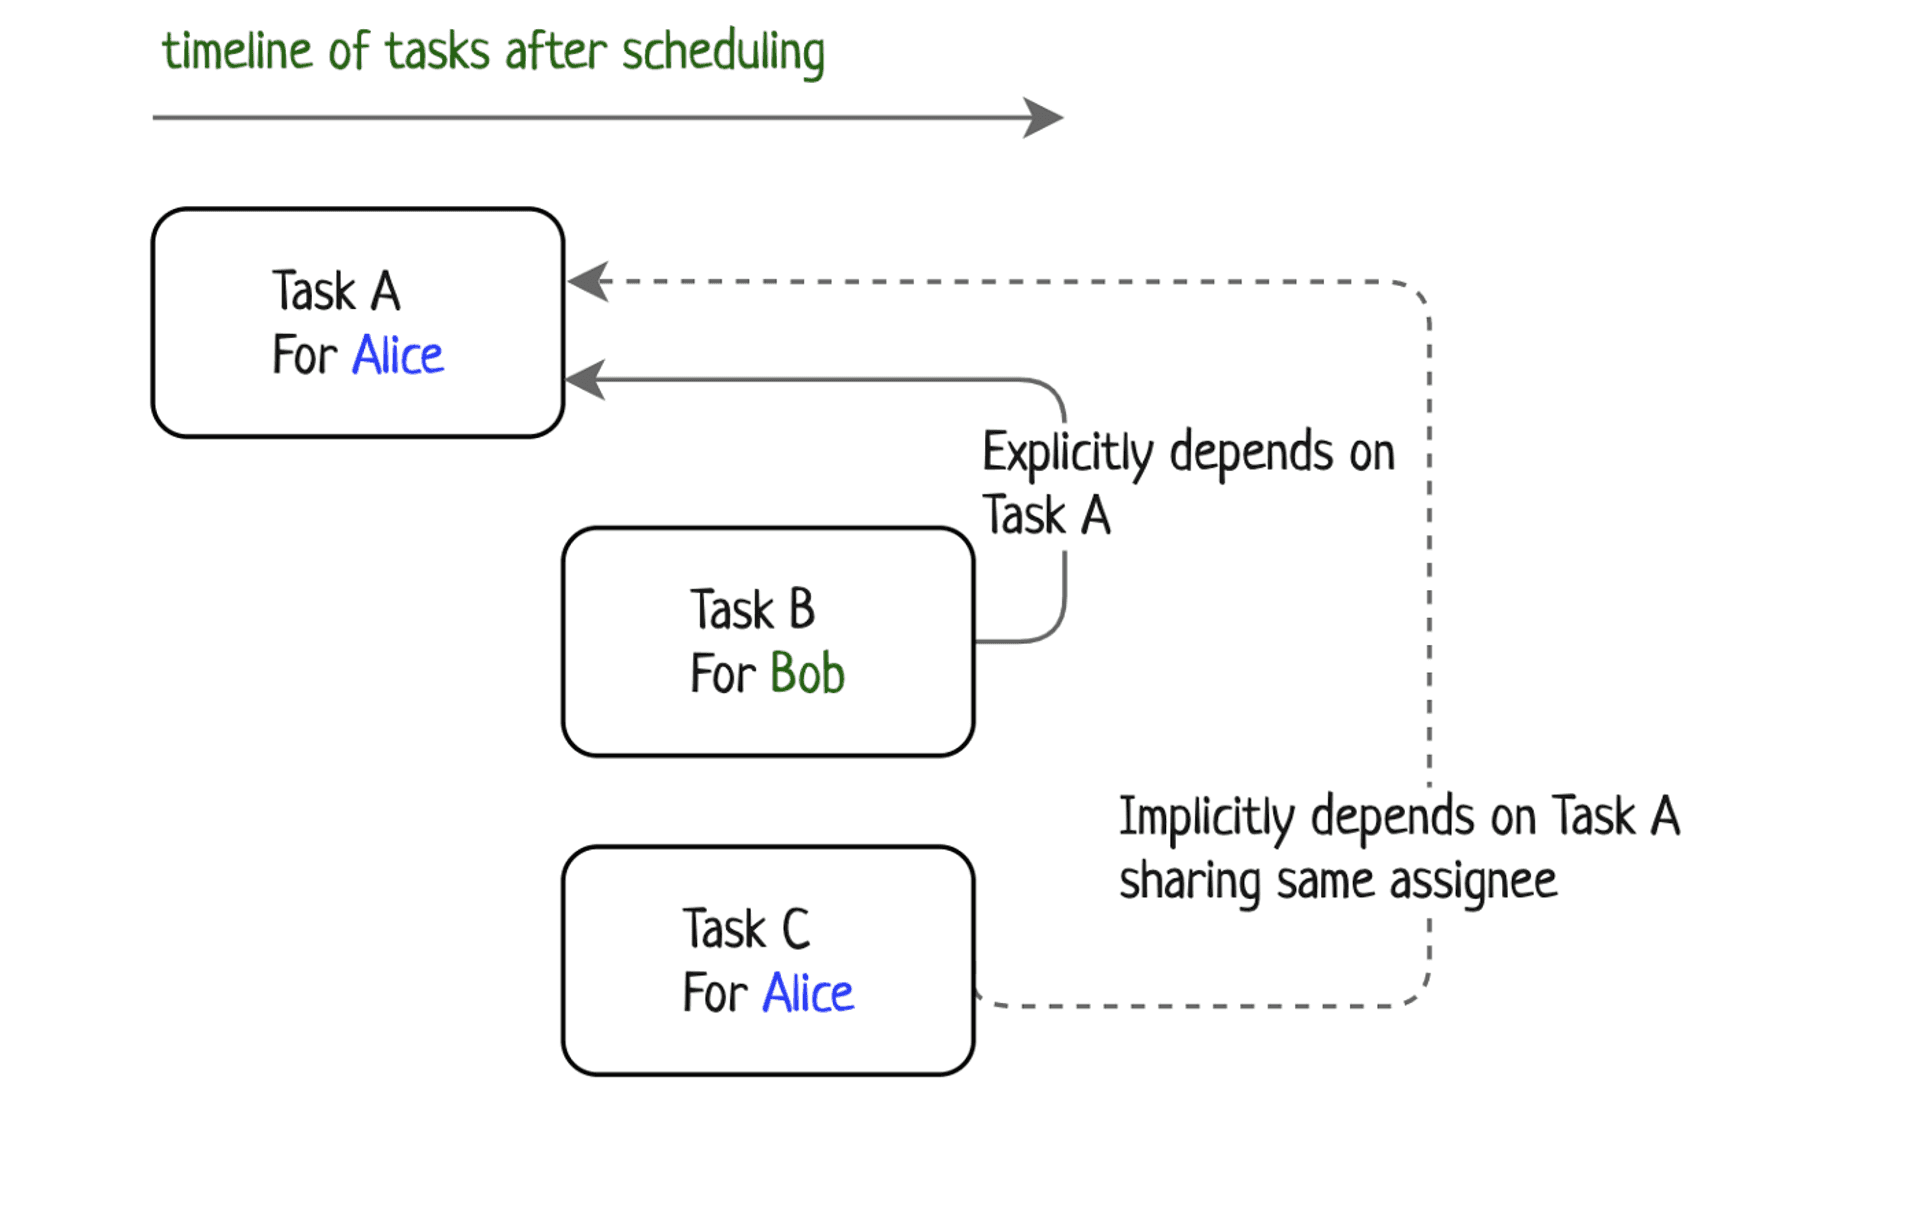 Timeline of tasks after scheduling